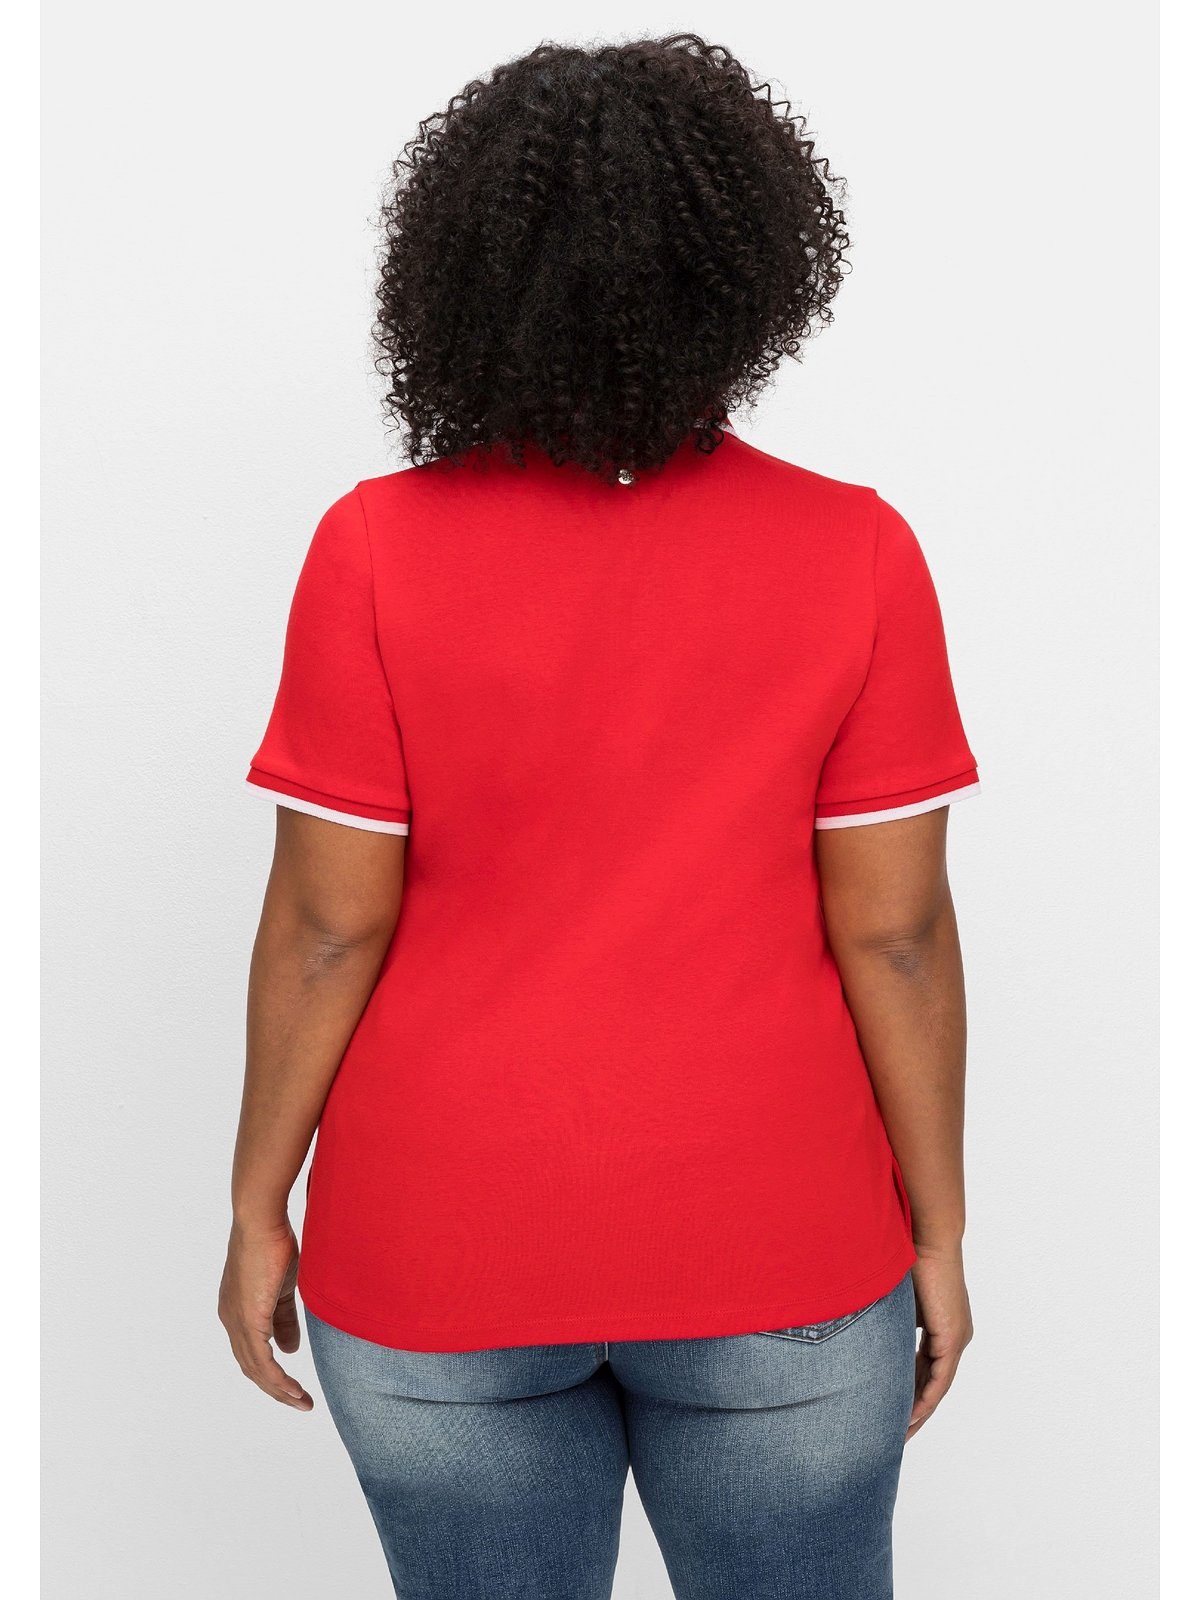 Sheego T-Shirt Große Größen Kontrastkanten, tailliert leicht mit